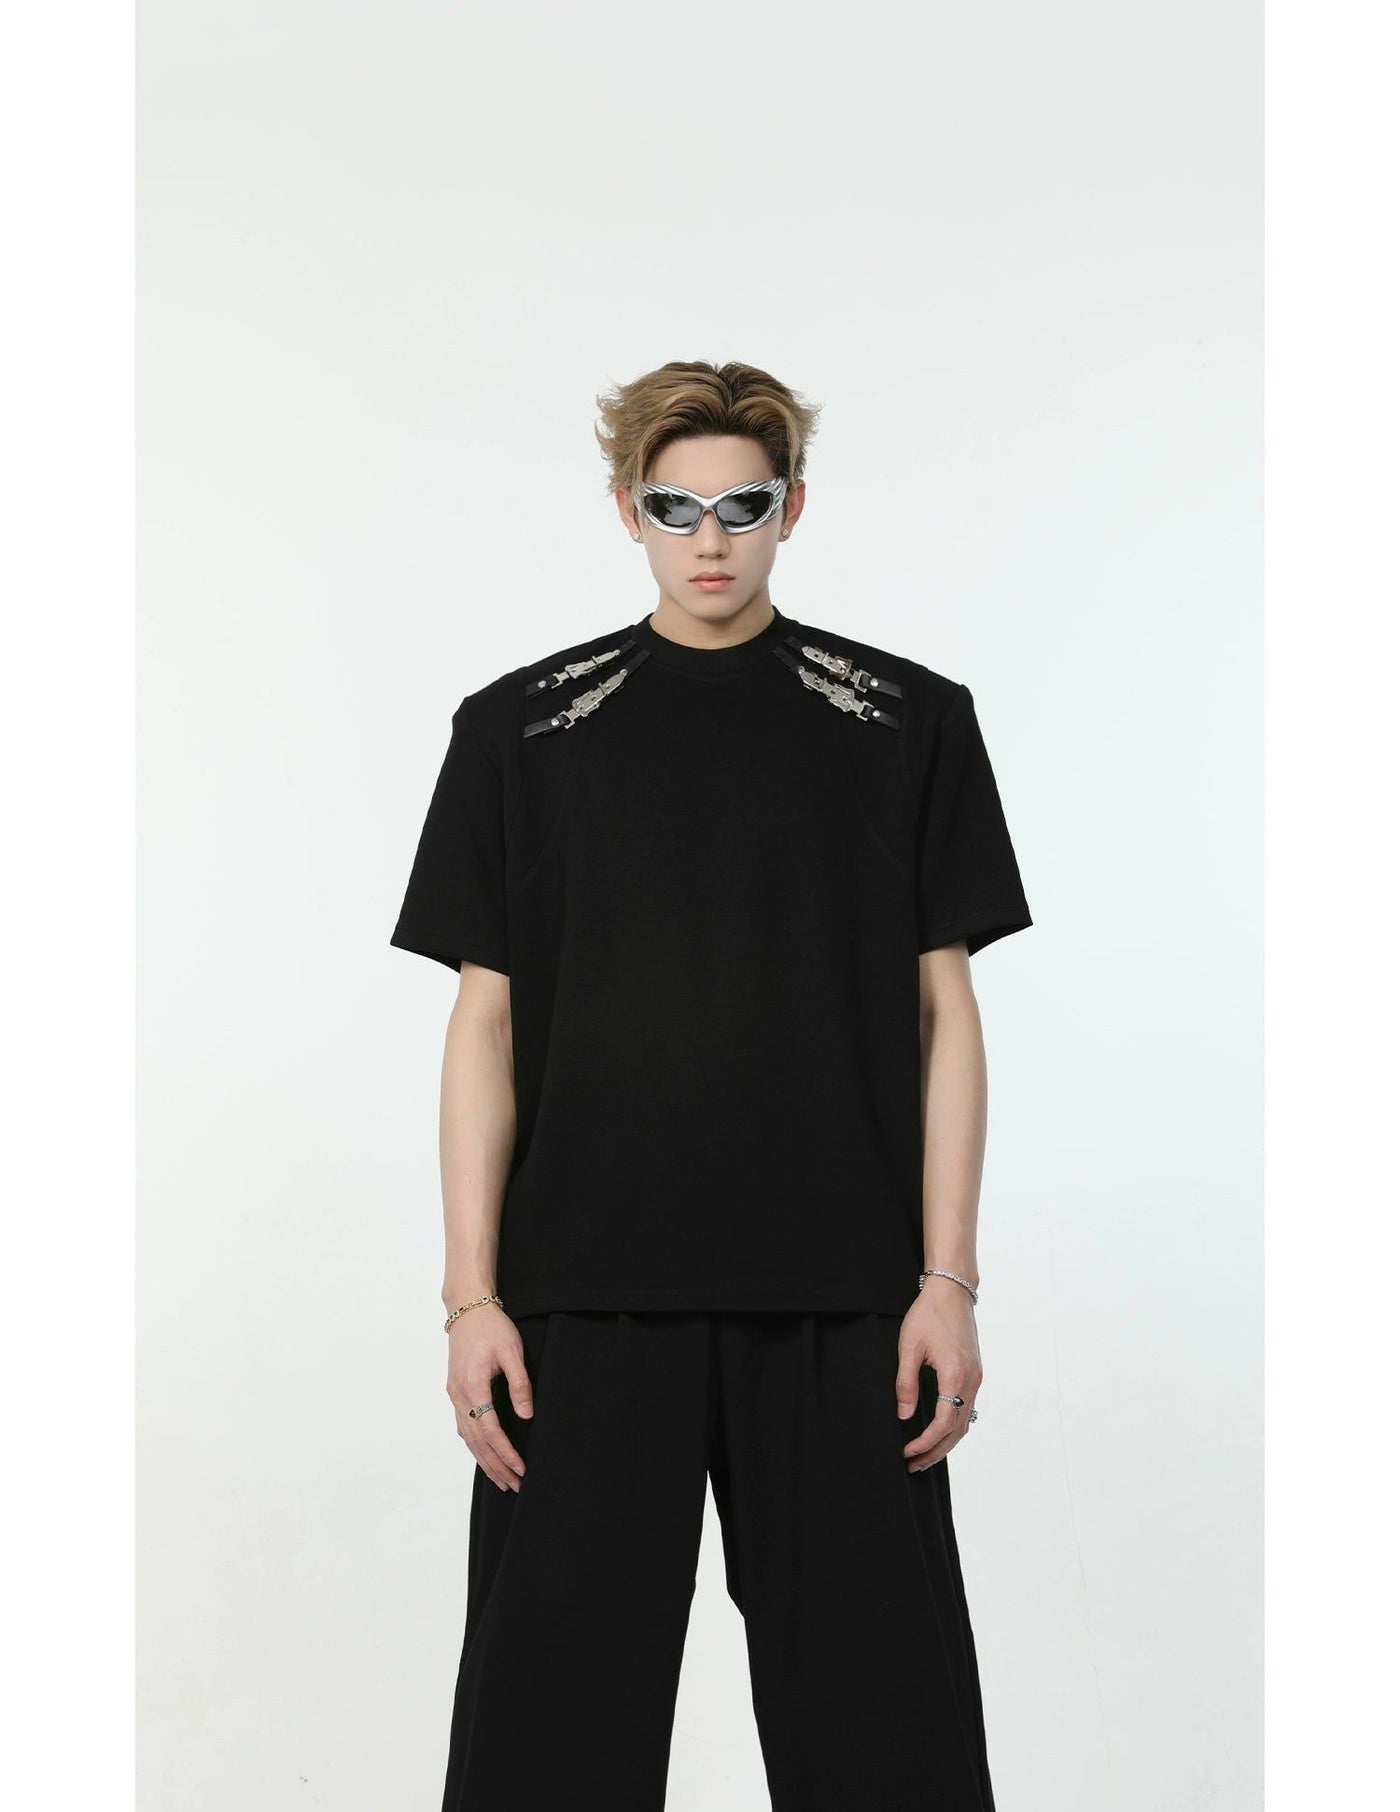 Metal Straps Shoulder T-Shirt Korean Street Fashion T-Shirt By Turn Tide Shop Online at OH Vault